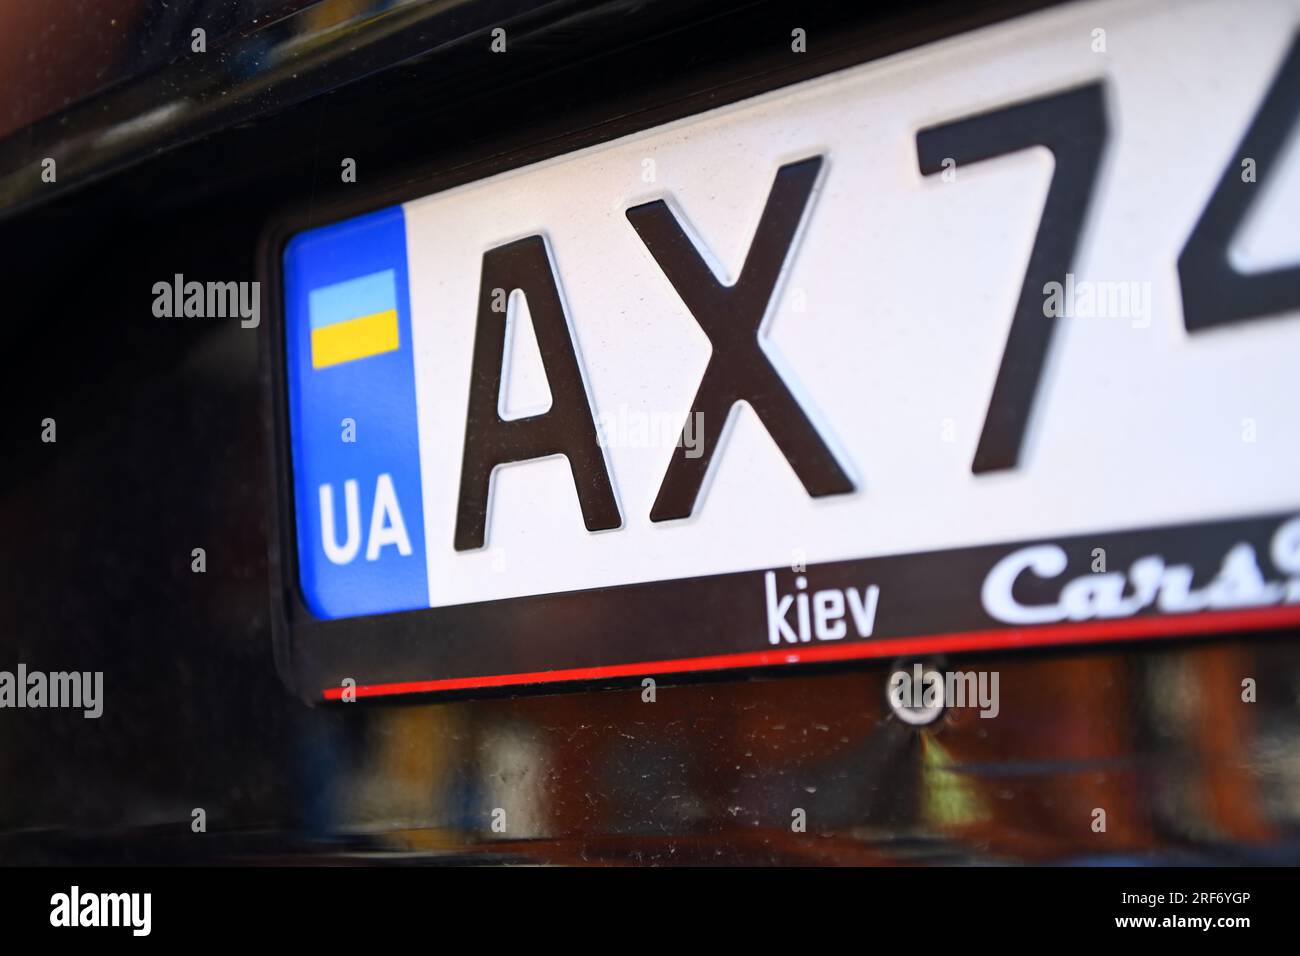 Fahrzeug mit ukrainischem Kennzeichen in Deutschland Stock Photo